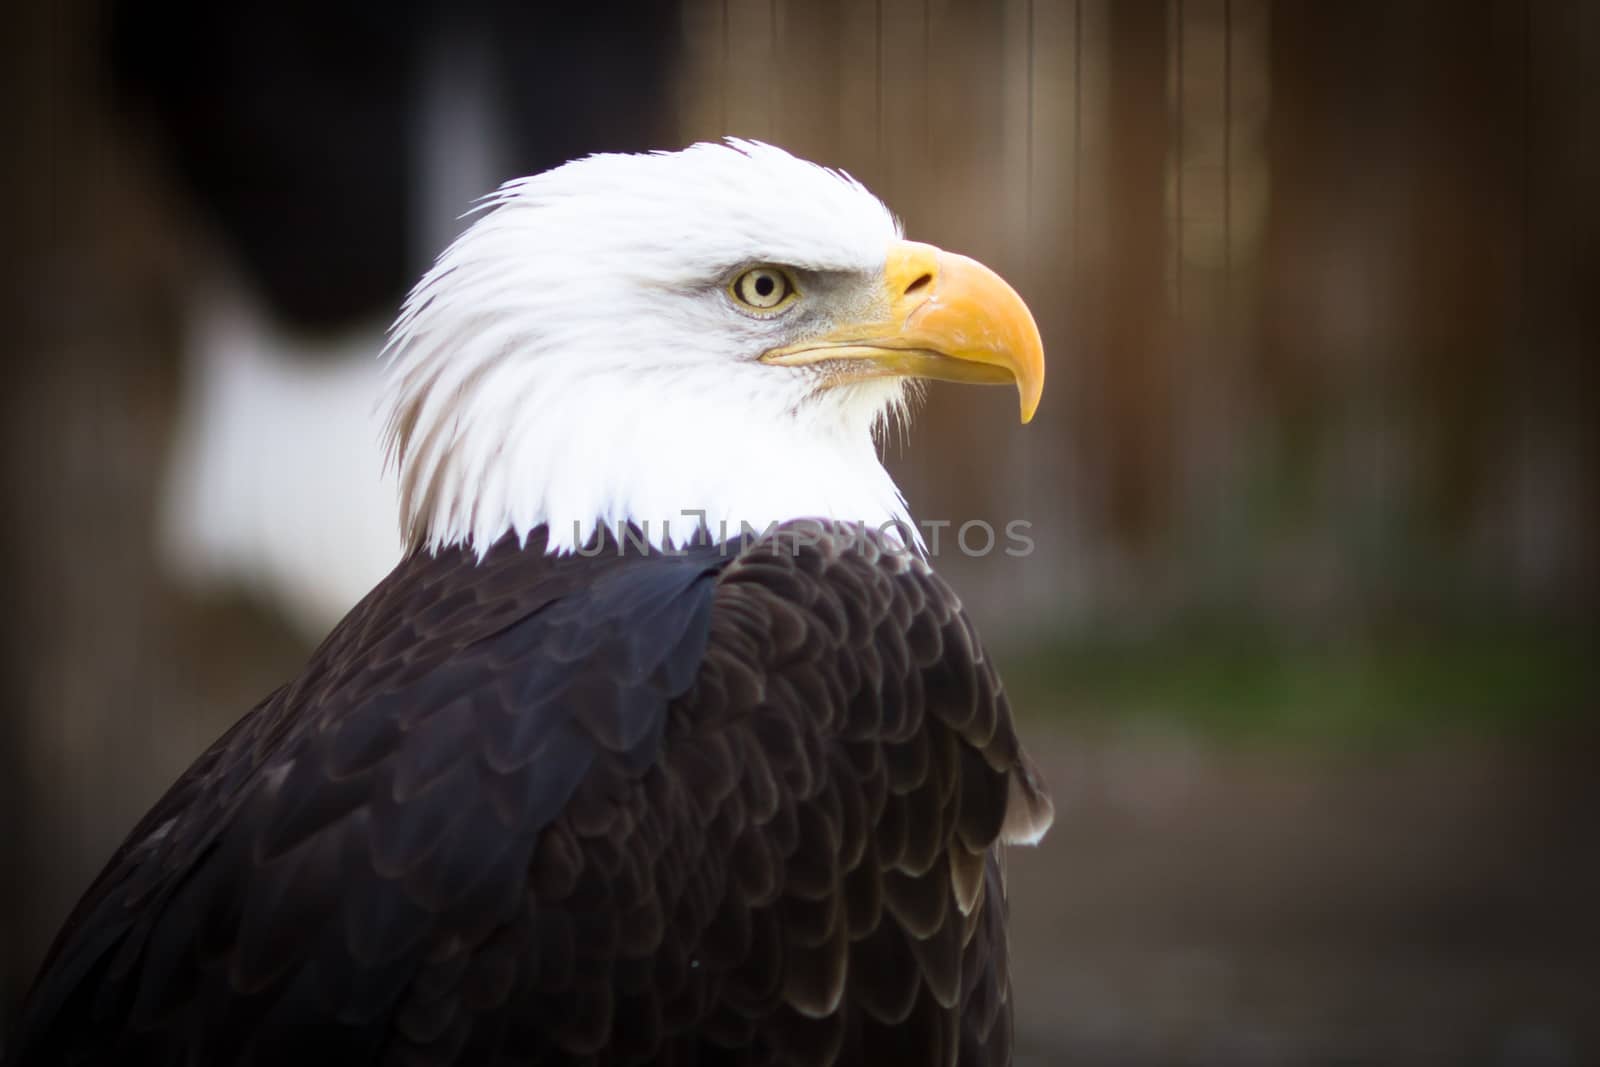 Bald eagle (Haliaeetus leucocephalus), the national emblem of the United States.